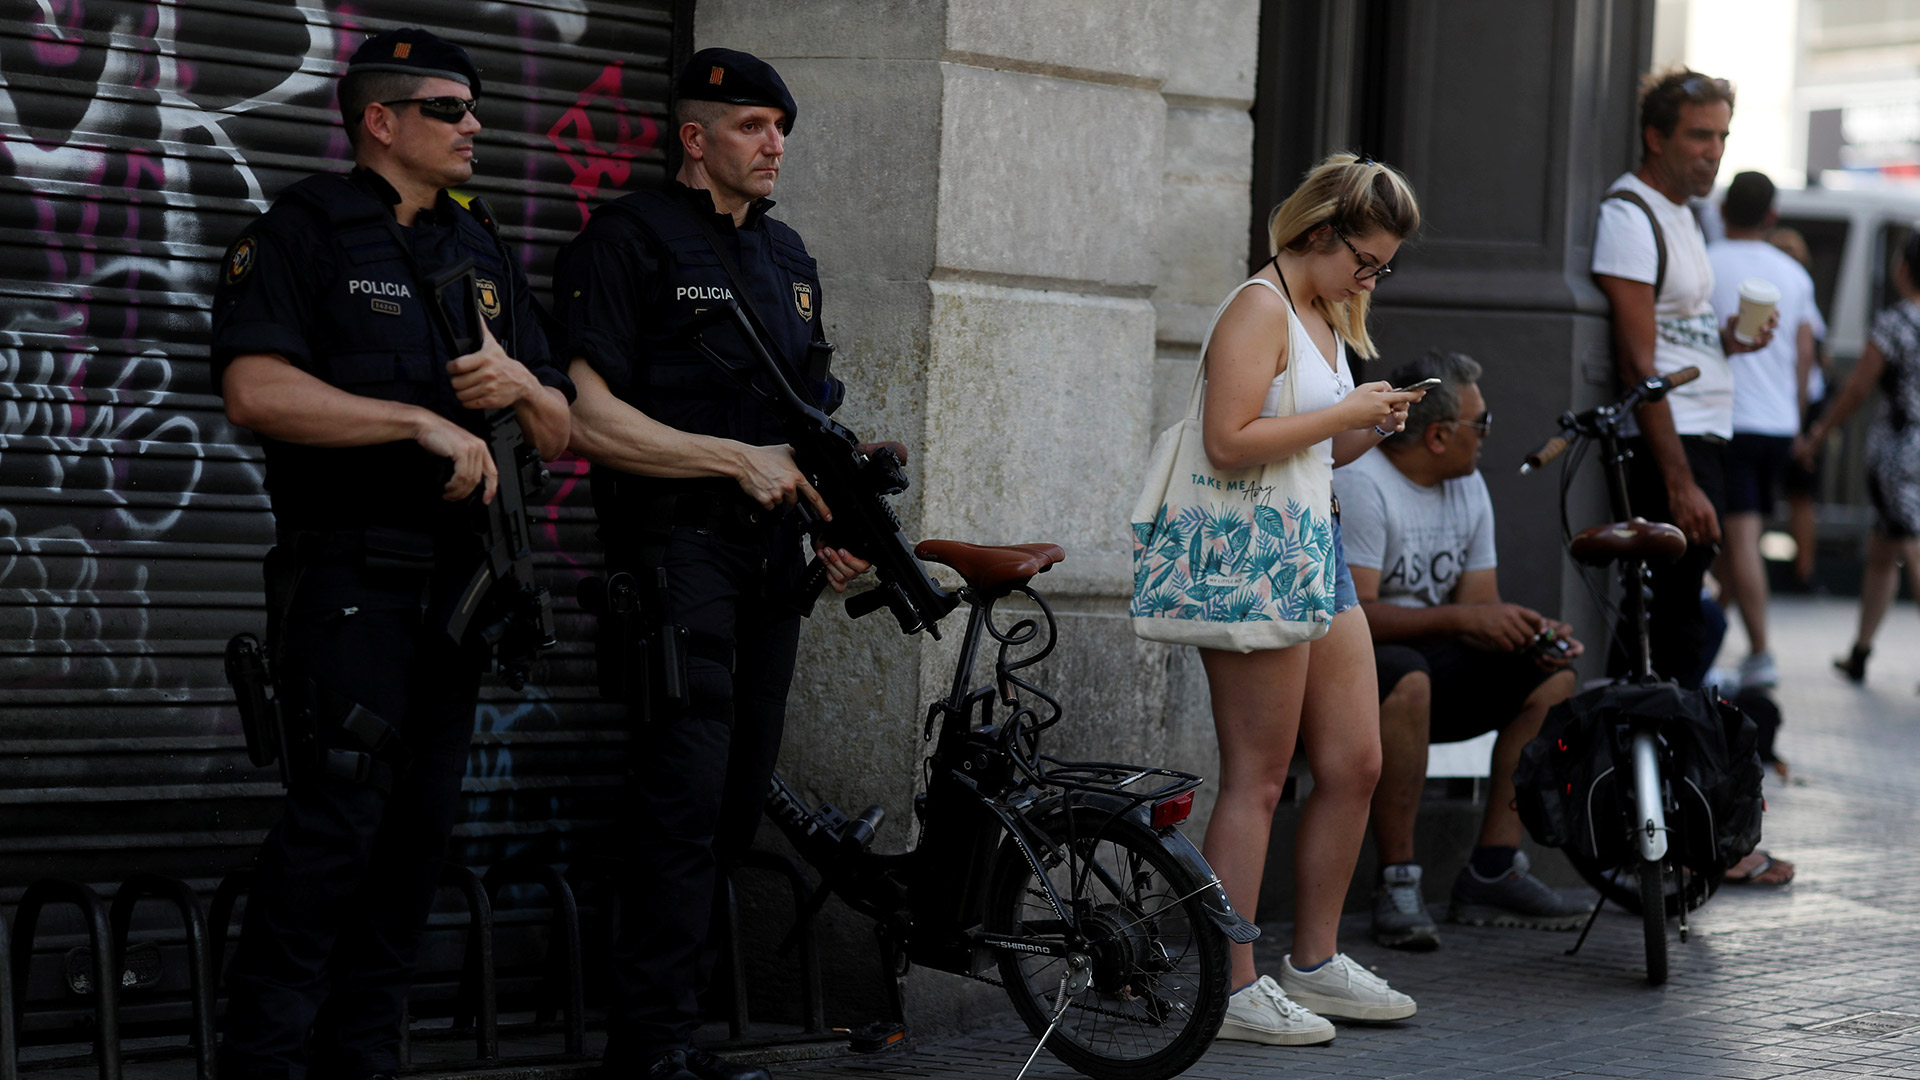 WhatsApp y las redes sociales se llenan de bulos sobre el atentado de Barcelona